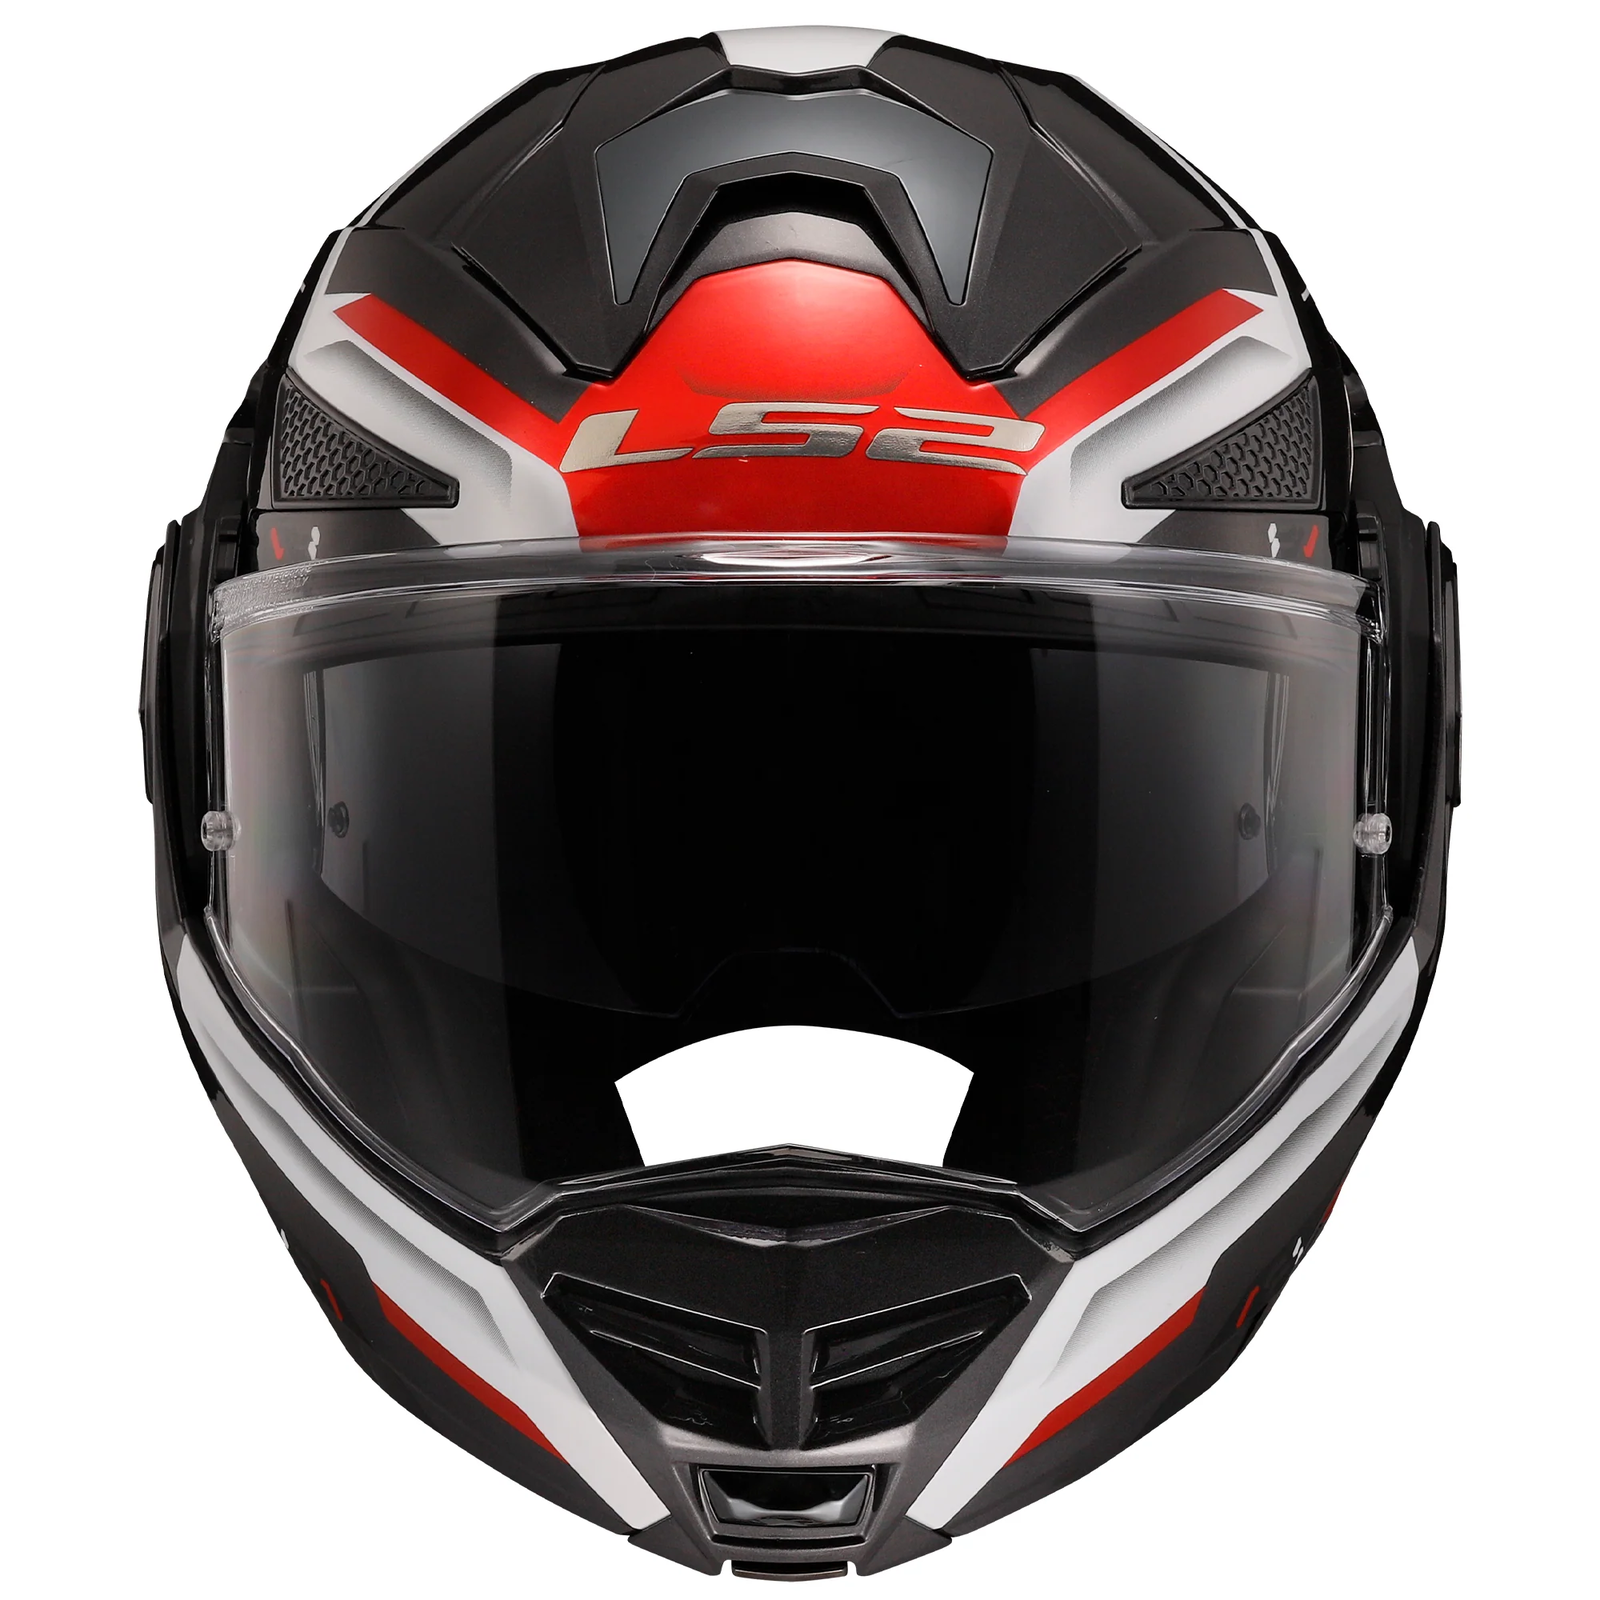 Riderwear | LS2 FF901 ADVANT X SPECTRUM Modular Helmet - Black White Red